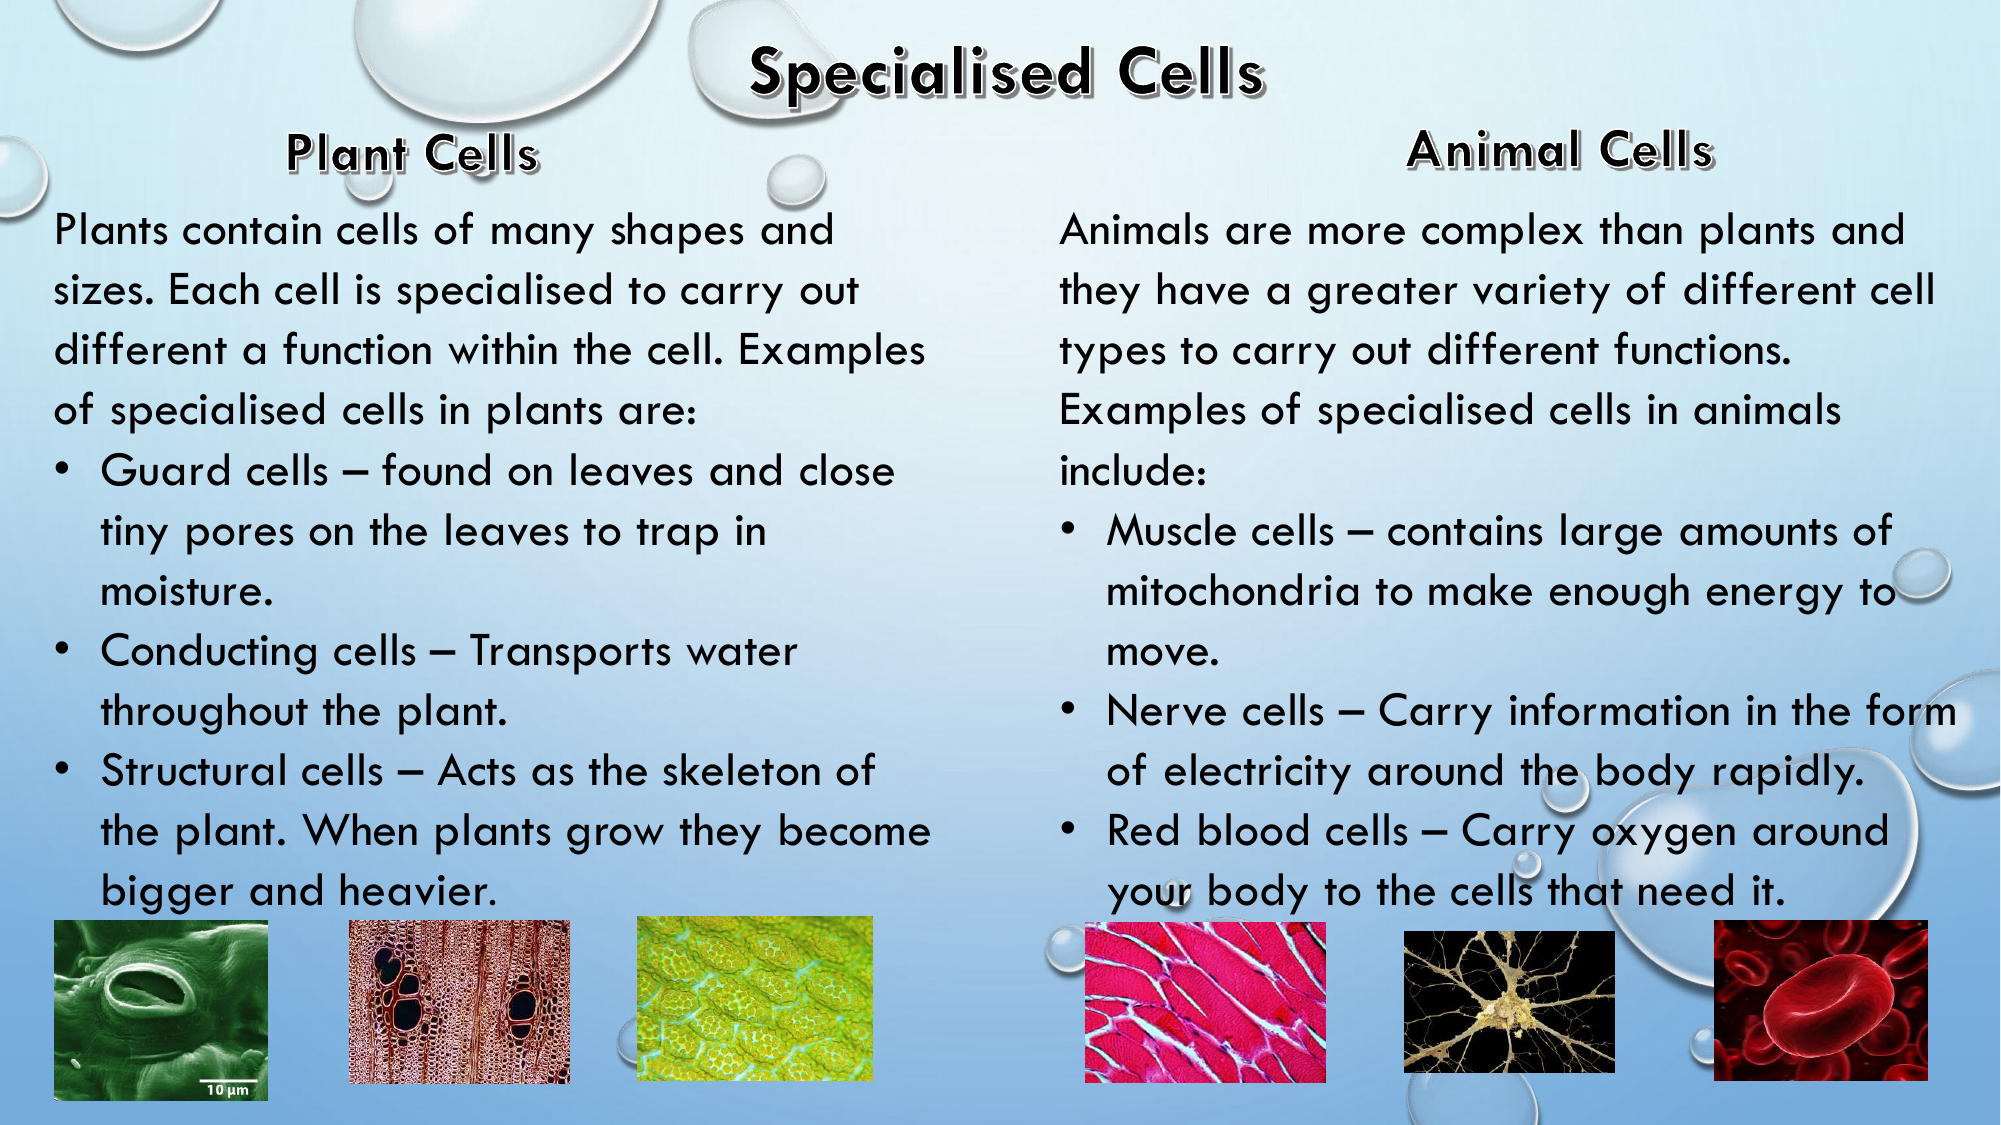 Specialized Cells Comparison - Plants vs Animals